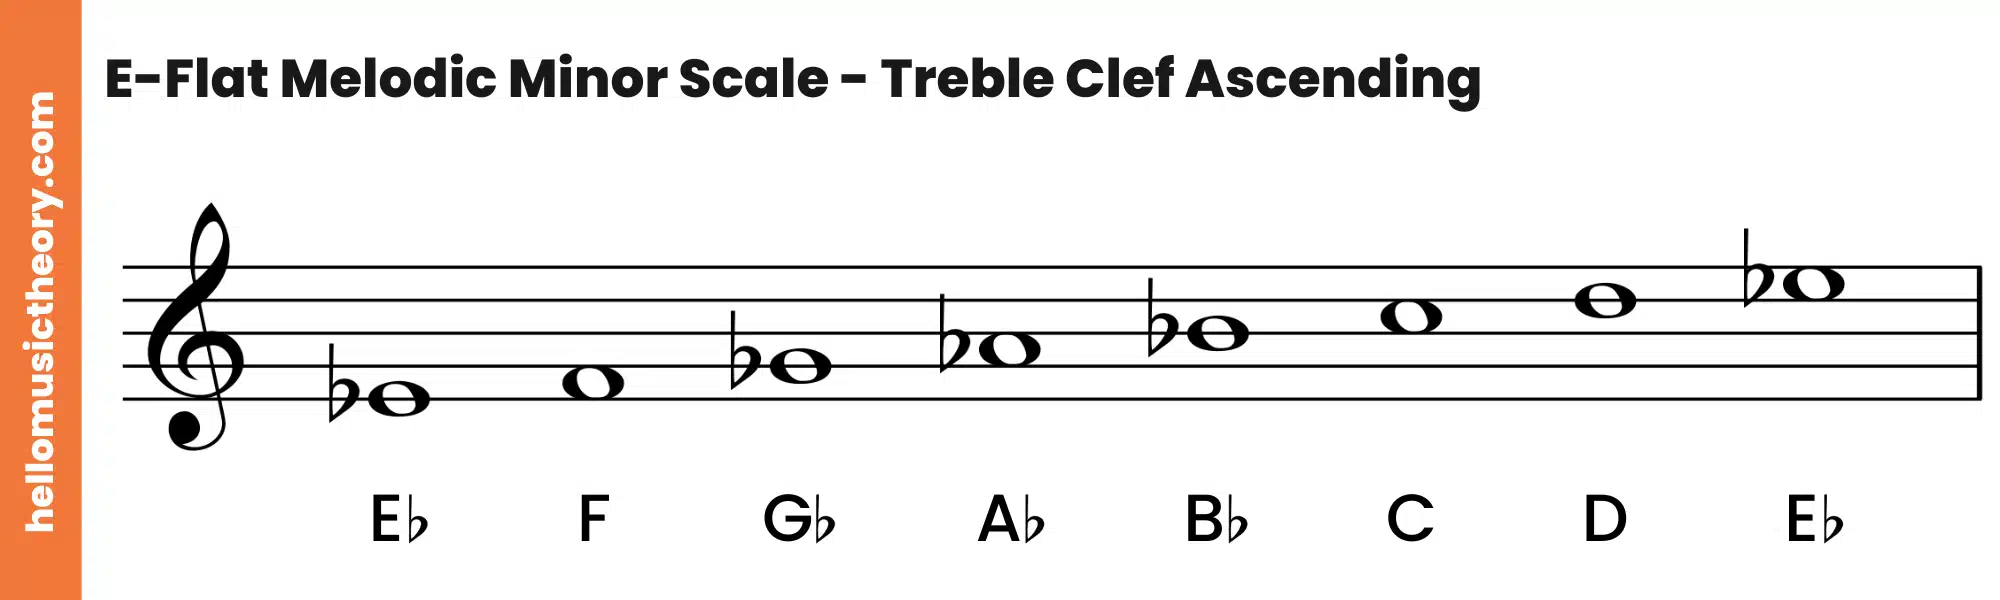 E-Flat Melodic Minor Scale Treble Clef Ascending